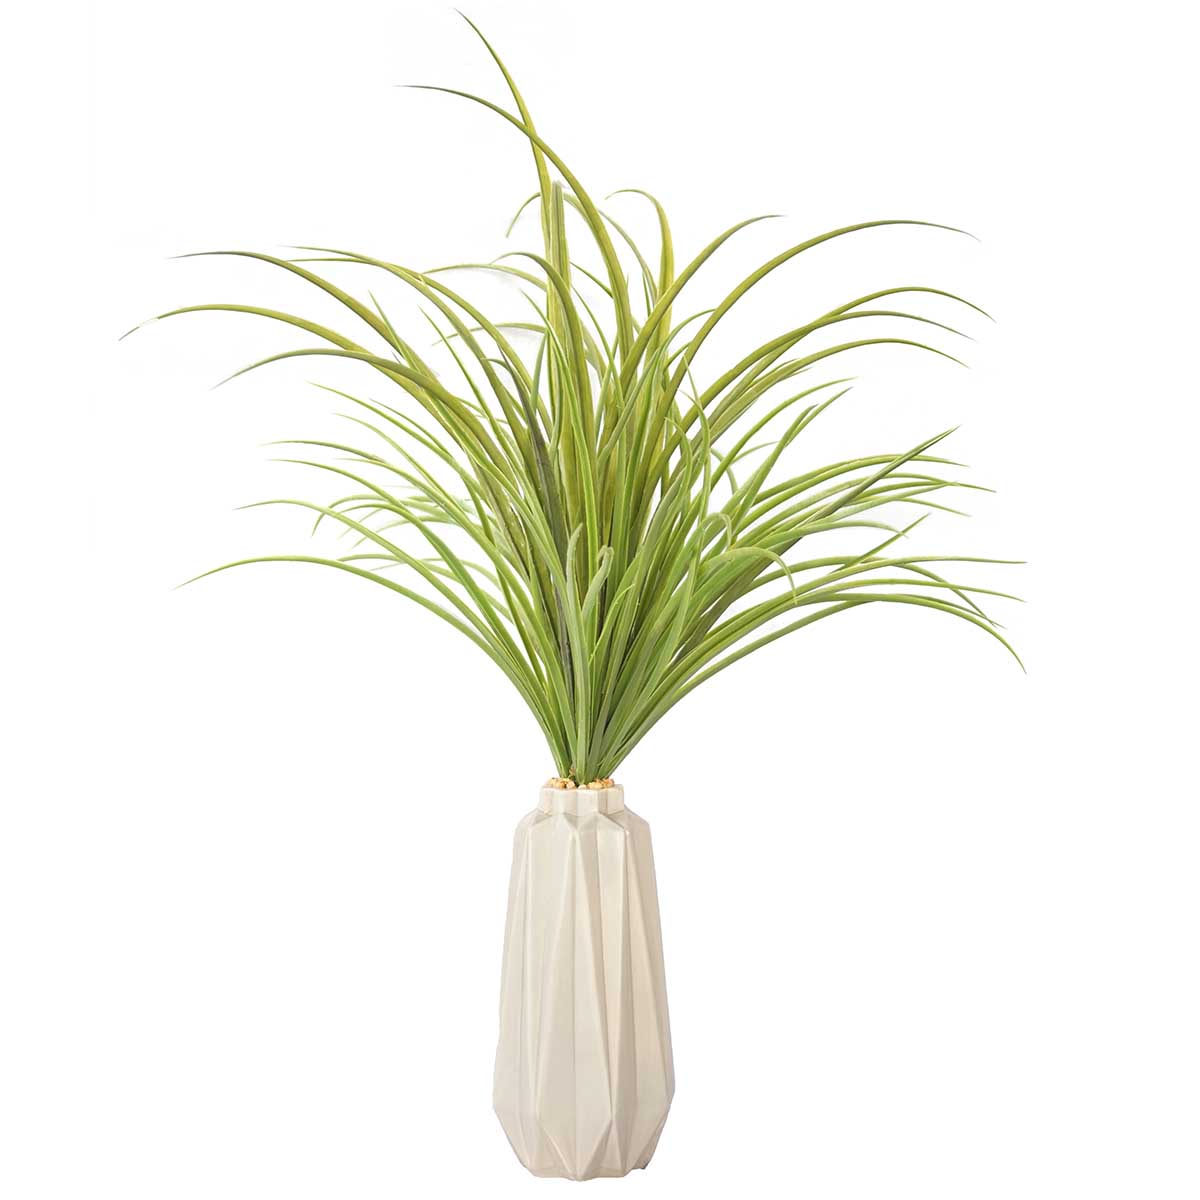 Vha102466 Plastic Grass In Ceramic Vase - Grey